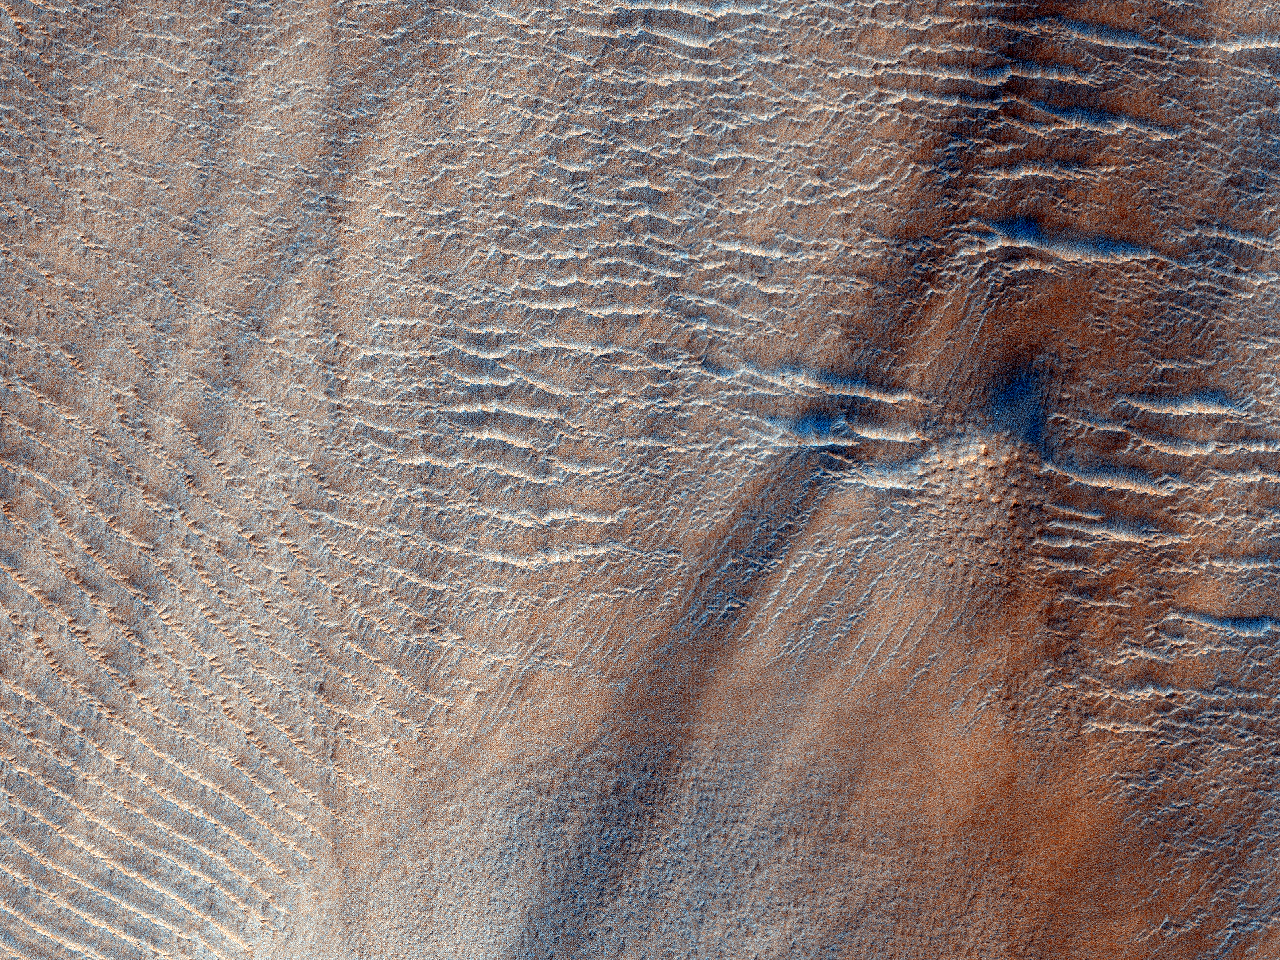 Getste bodem in Argyre Planitia